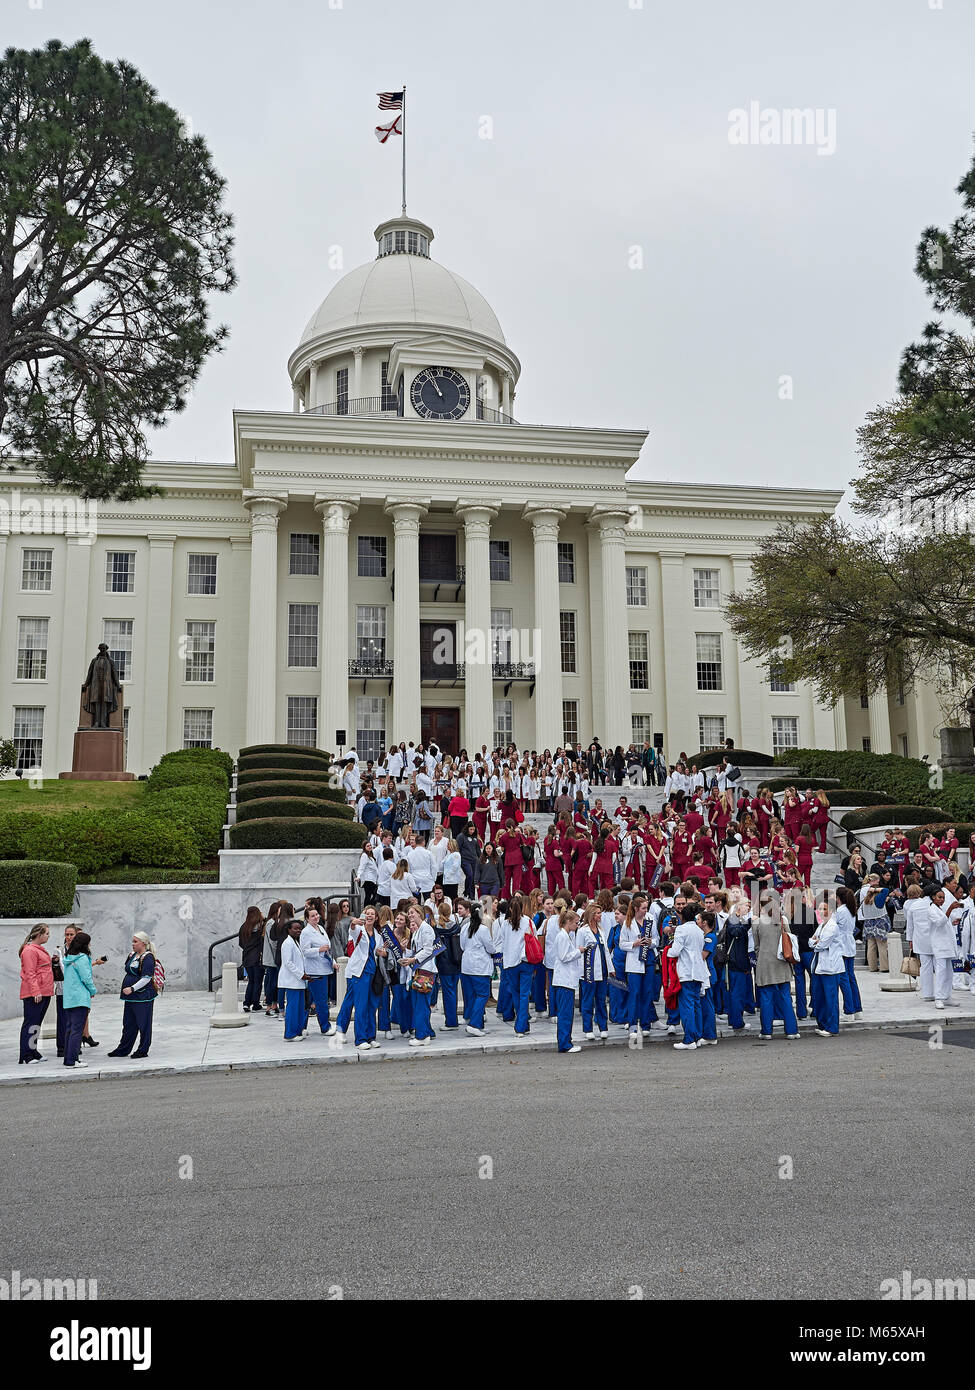 Asistir a las enfermeras Las enfermeras de Alabama el día en el Capitolio, un rally for Healthcare legislación conexa en Montgomery, Alabama, Estados Unidos. Foto de stock